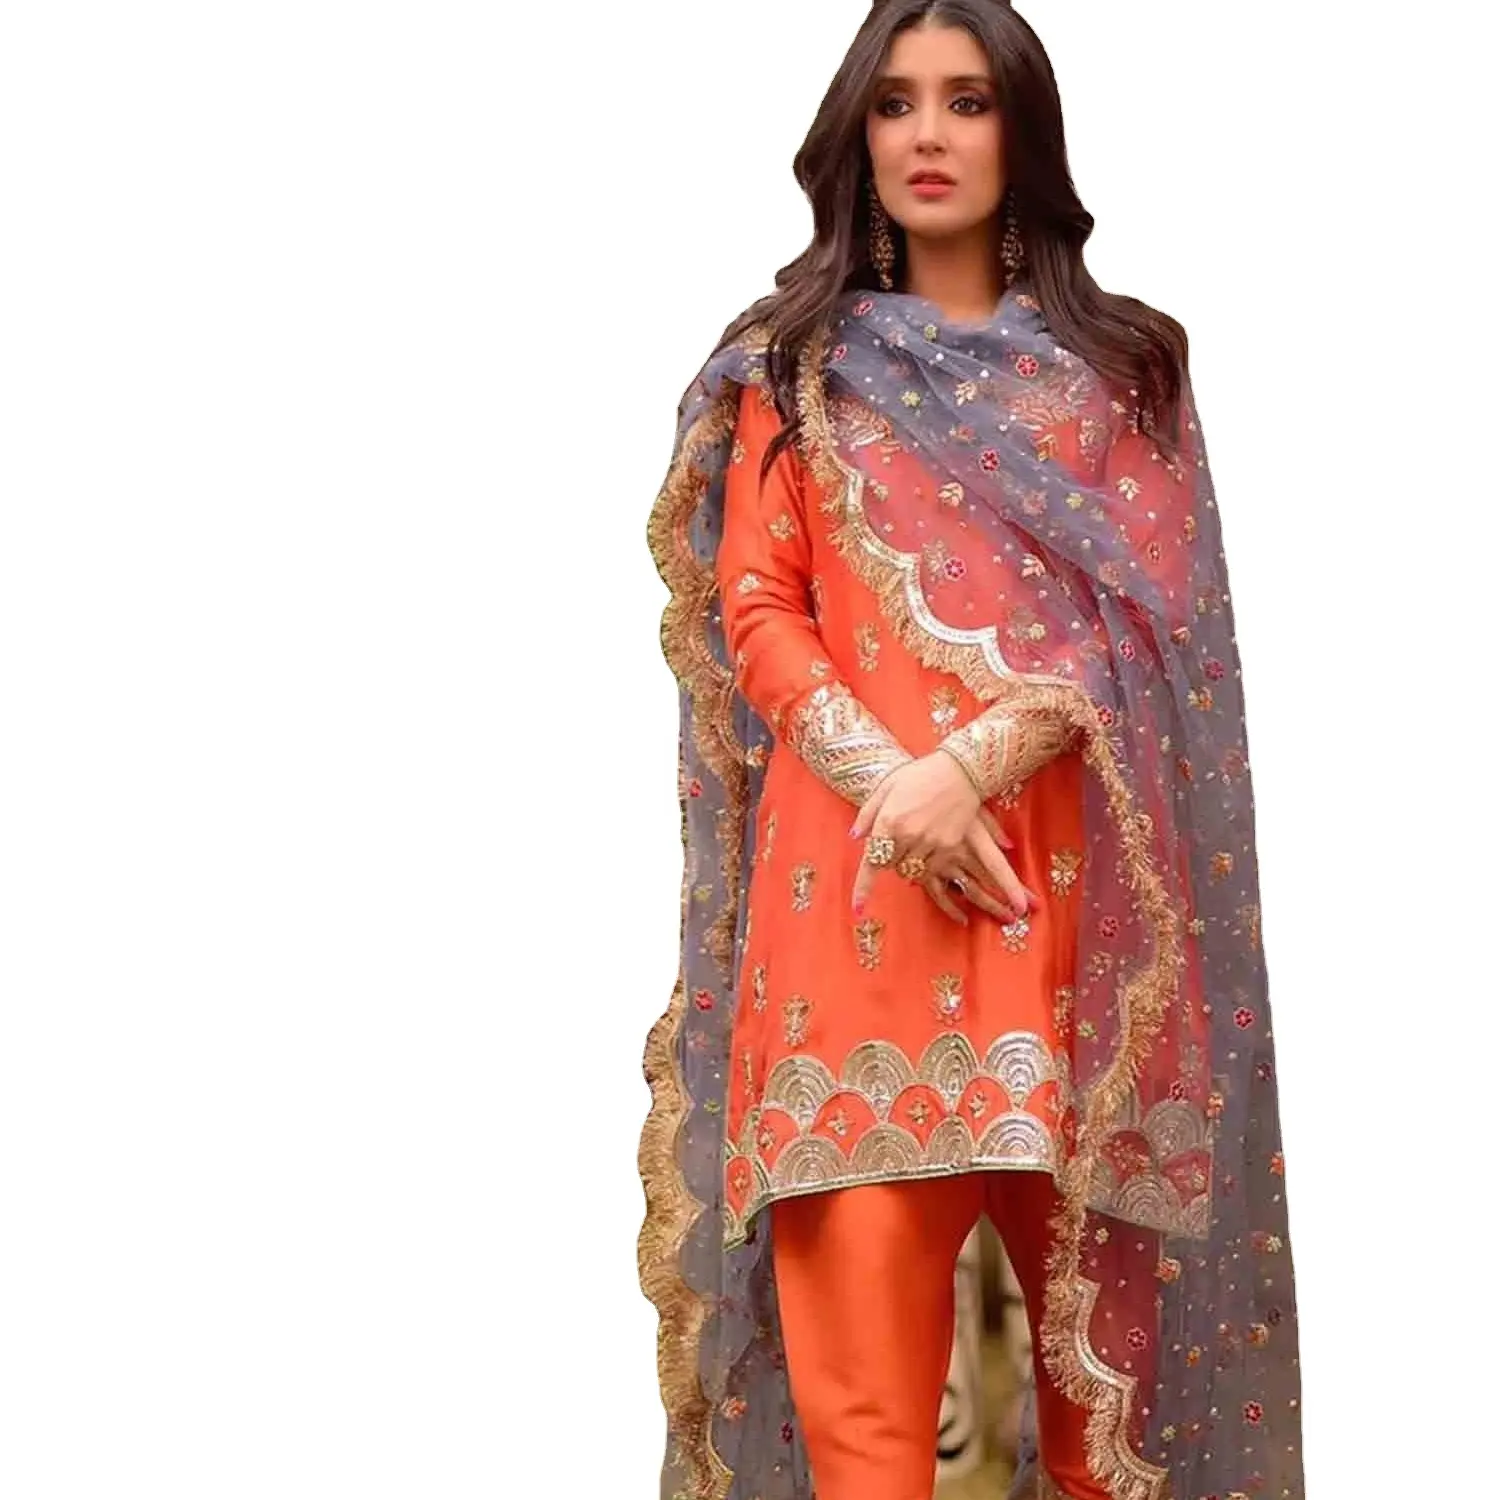 Dgb ihracat kadınlar etnik giyim patiala elbise parti akşam düğün kıyafeti Gharara Sharara Punjabi Salwar Kameez 2022 hindistan Surat